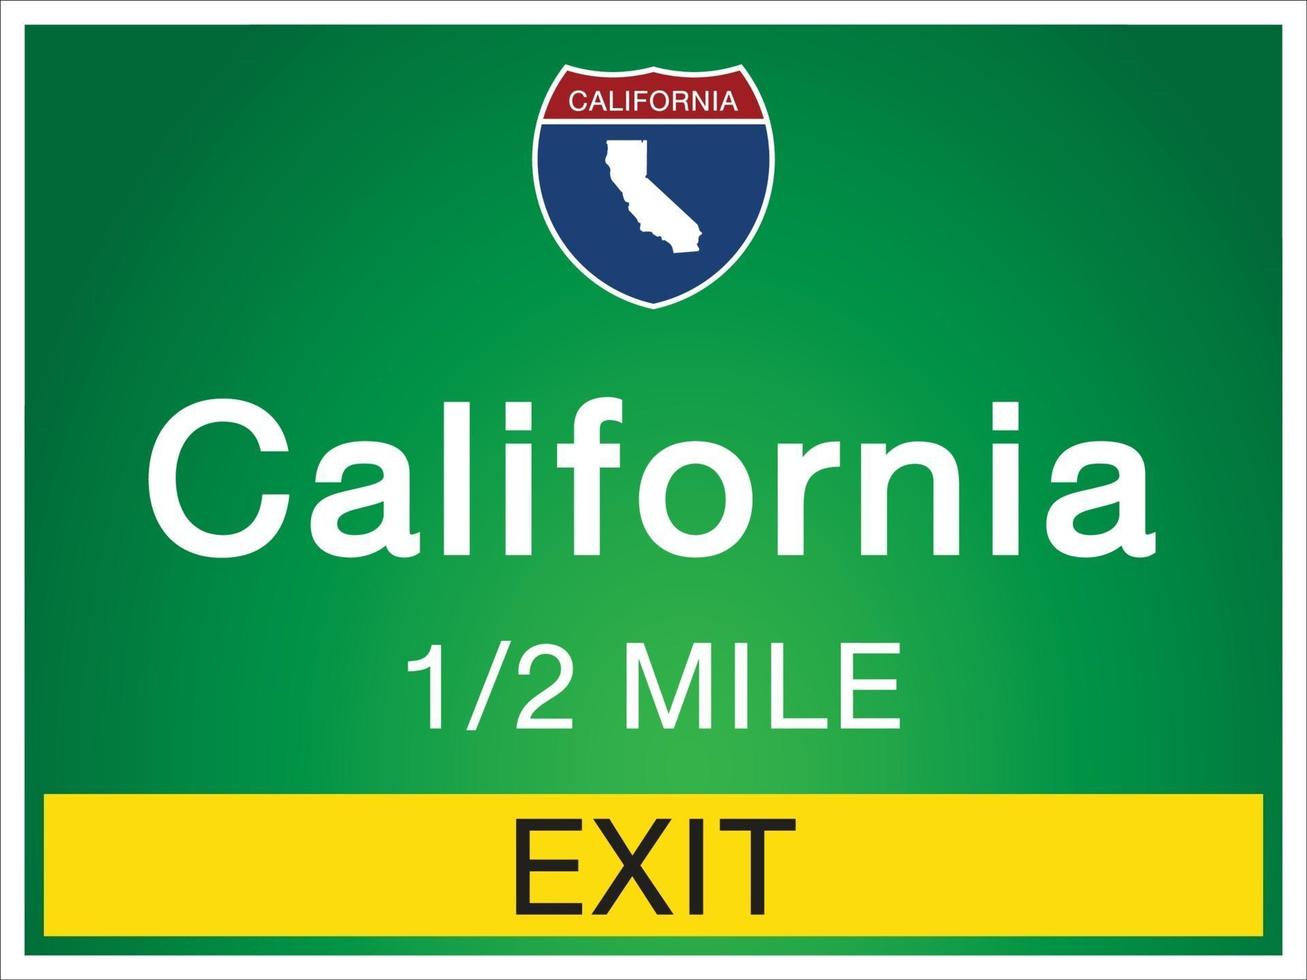 motorvägsskyltar före avfarten till california state information och kartor vektor